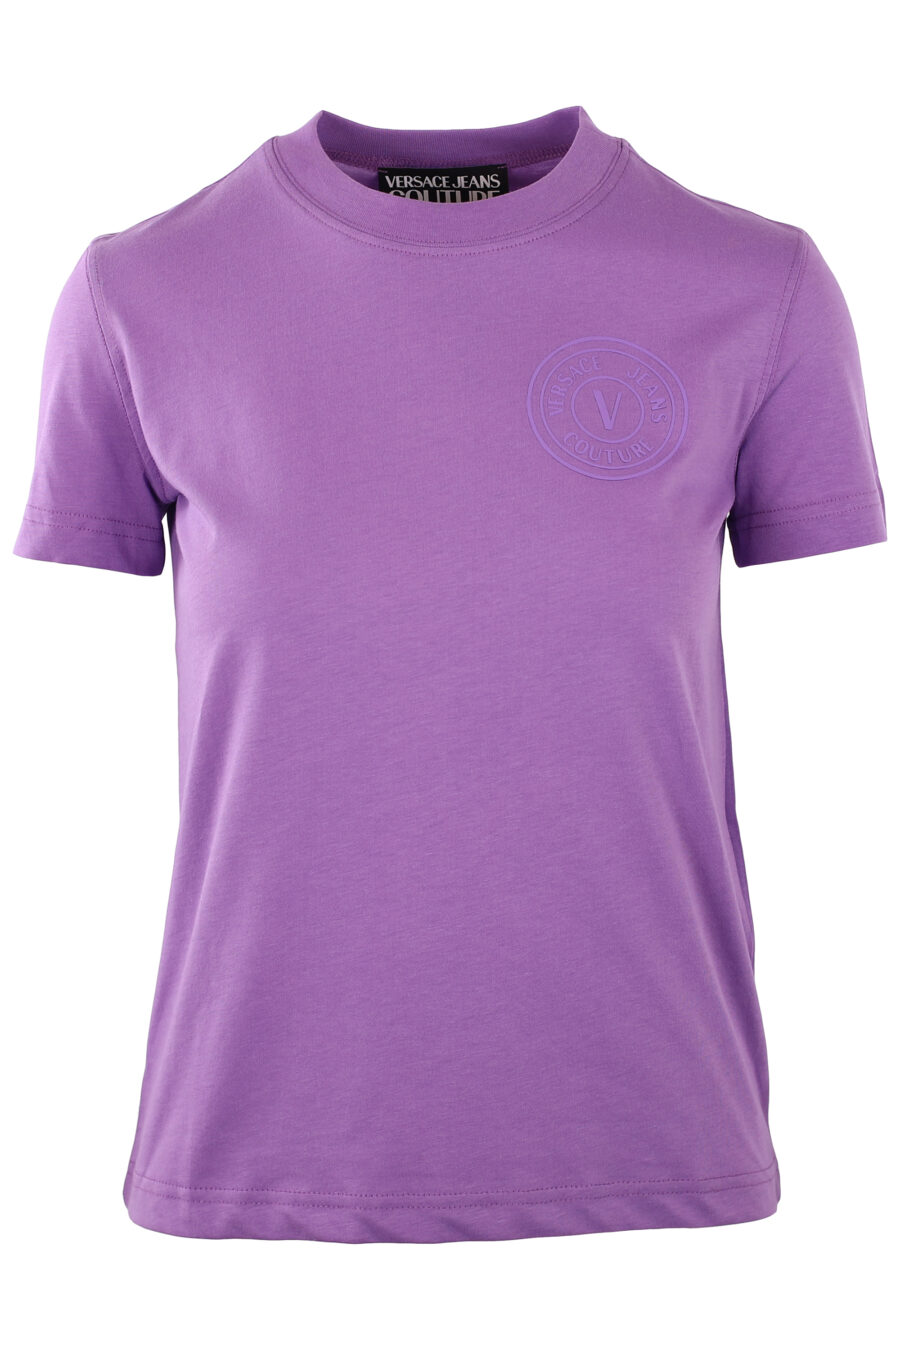 Camiseta morada con logo redondo monocromático - IMG 0234